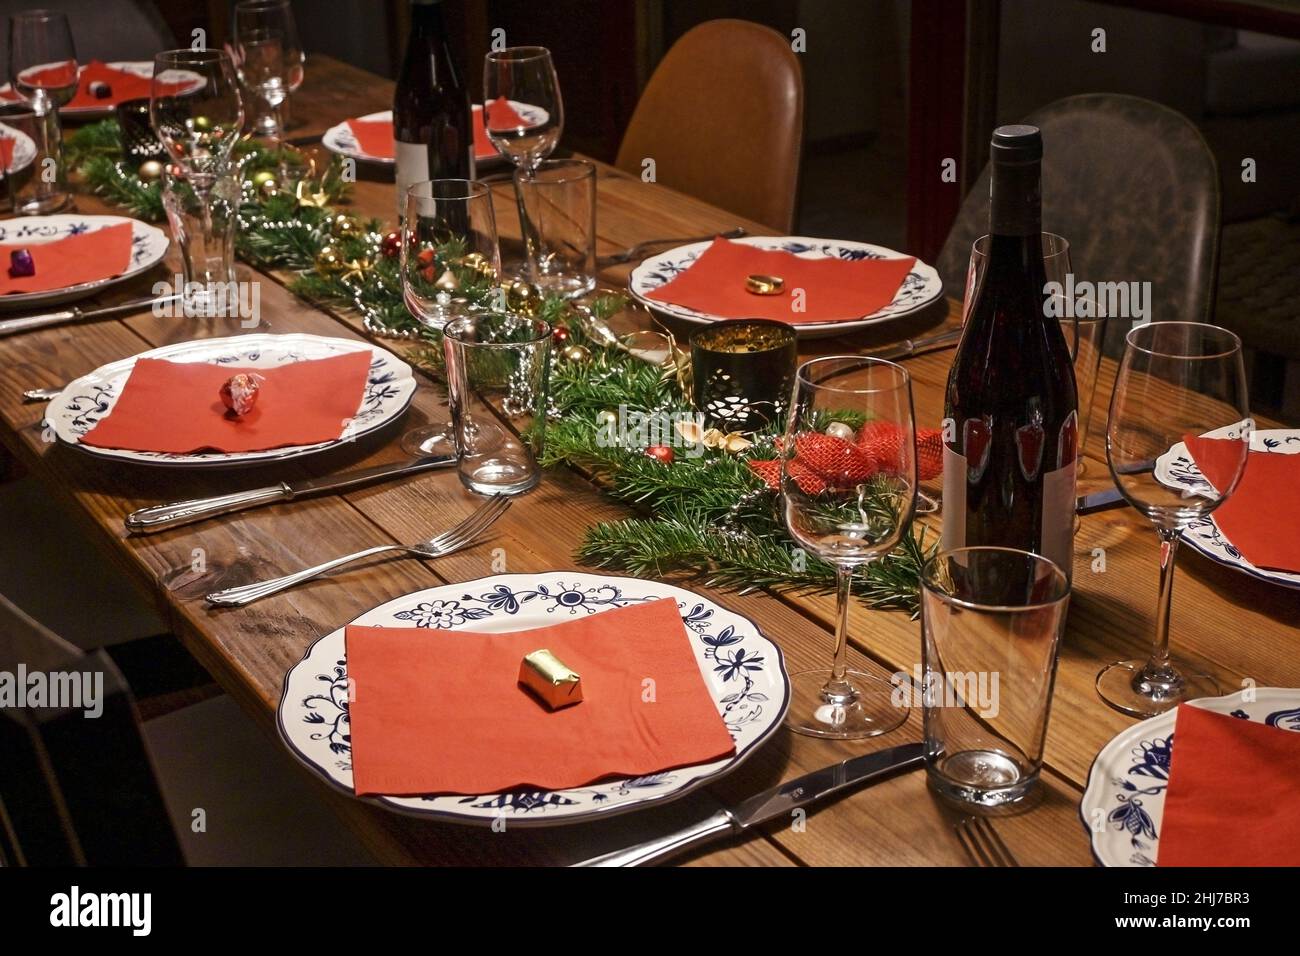 Grande table rustique en bois décor festif et décoré pour un dîner entre amis ou en famille, assiettes à motifs blanches, serviettes rouges, vin et verres, sélection Banque D'Images